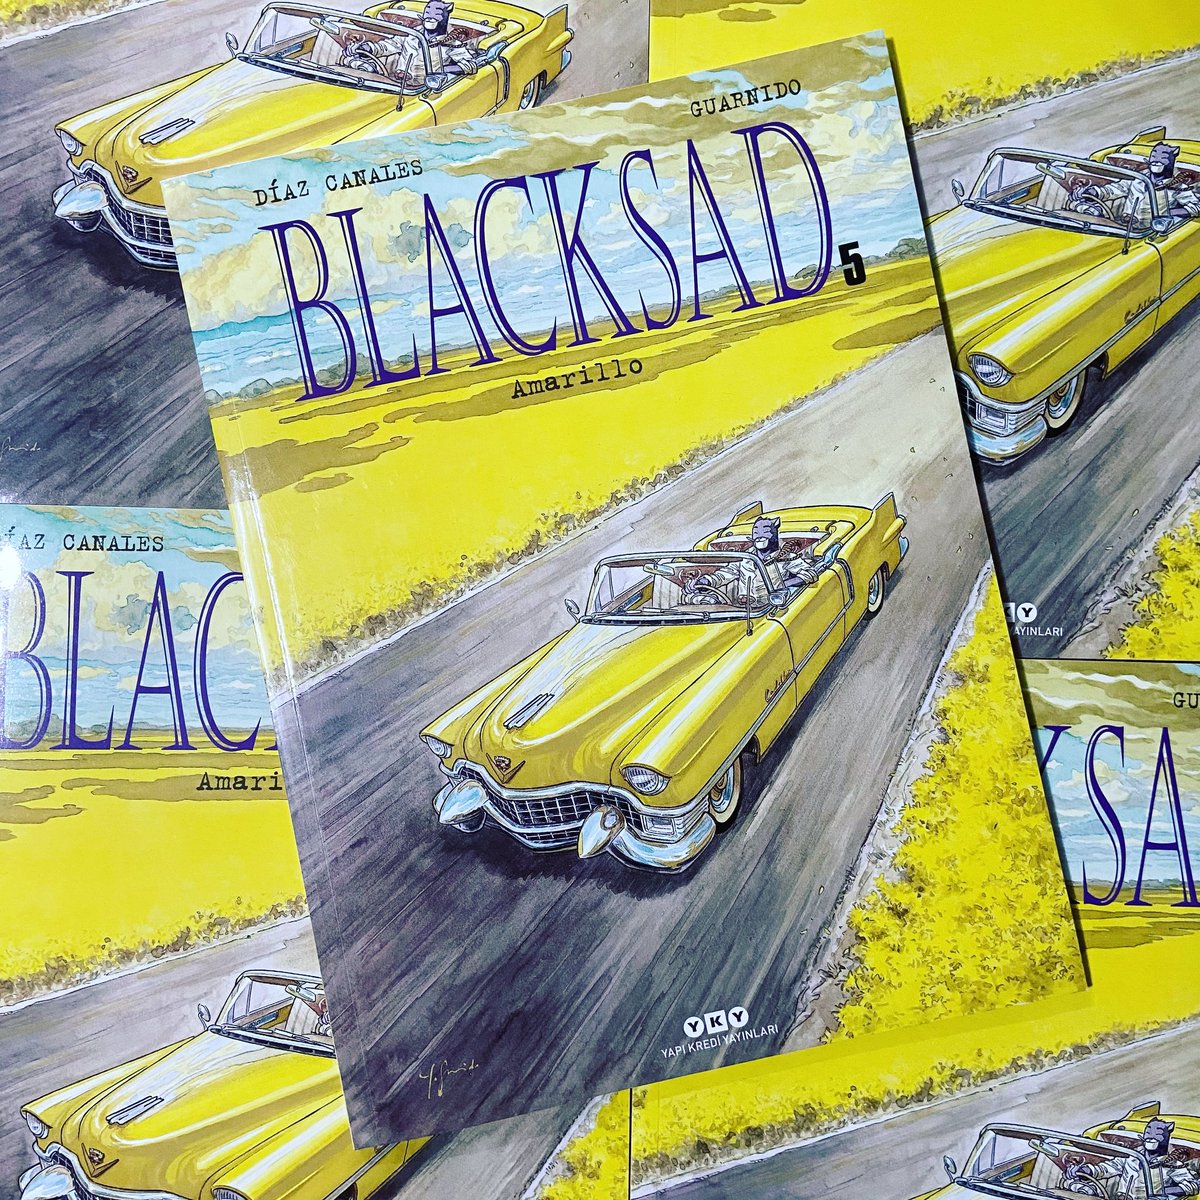 Blacksad Cilt 5 - Amarillo

@yapikrediyayinlari etiketiyle dükkanımıza gelmiştir. 

#blacksad #blacksadcomic #juanjoguarnido #juandiazcanales #yeniçıkankitaplar #çizgiroman #çizgiromantürkiye #bursa